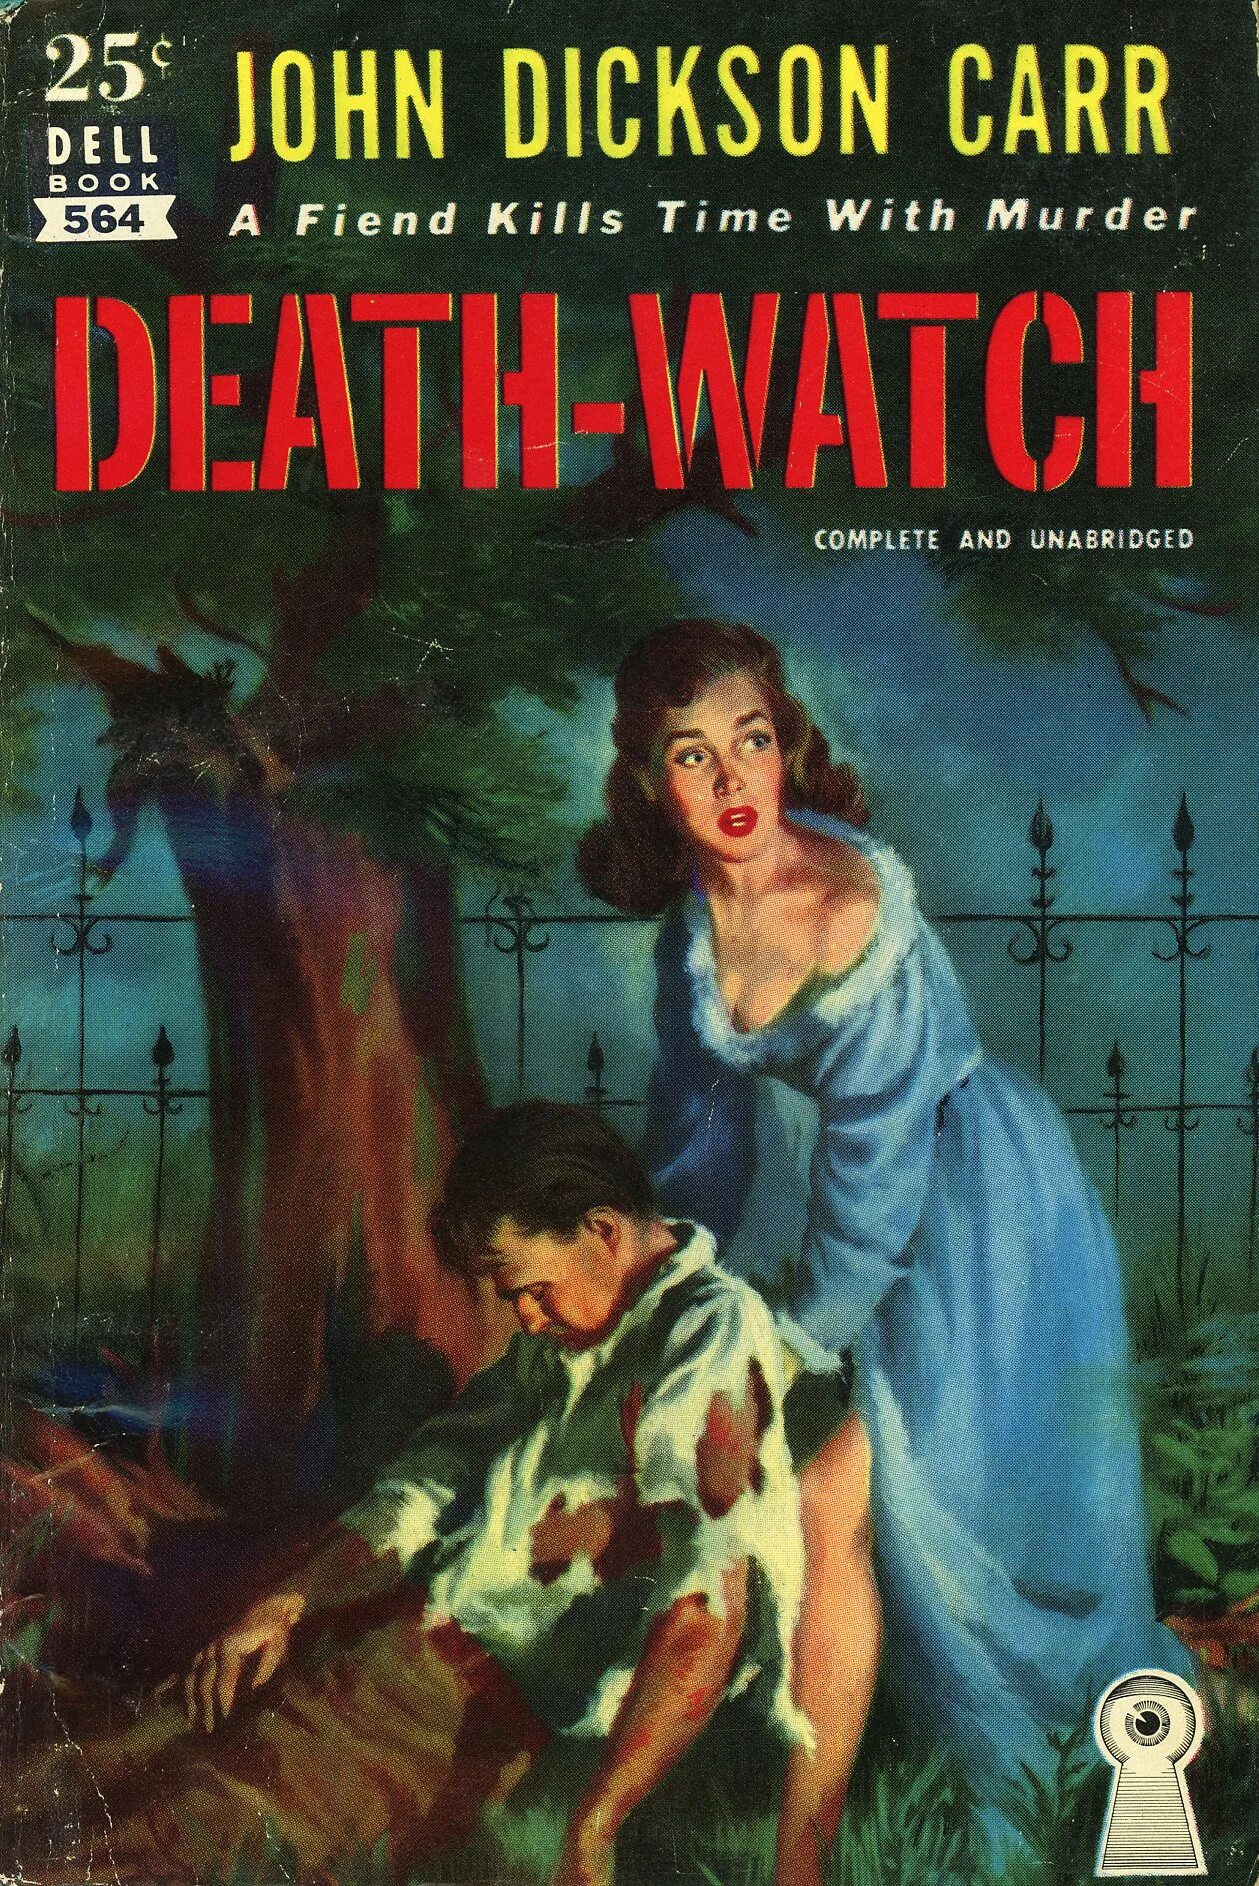 Карр д д. Джон Диксон карр обложка. Джон Диксон карр часы смерти. Джон Диксон карр книги. John Dickson Carr - Deathwatch, 1935.